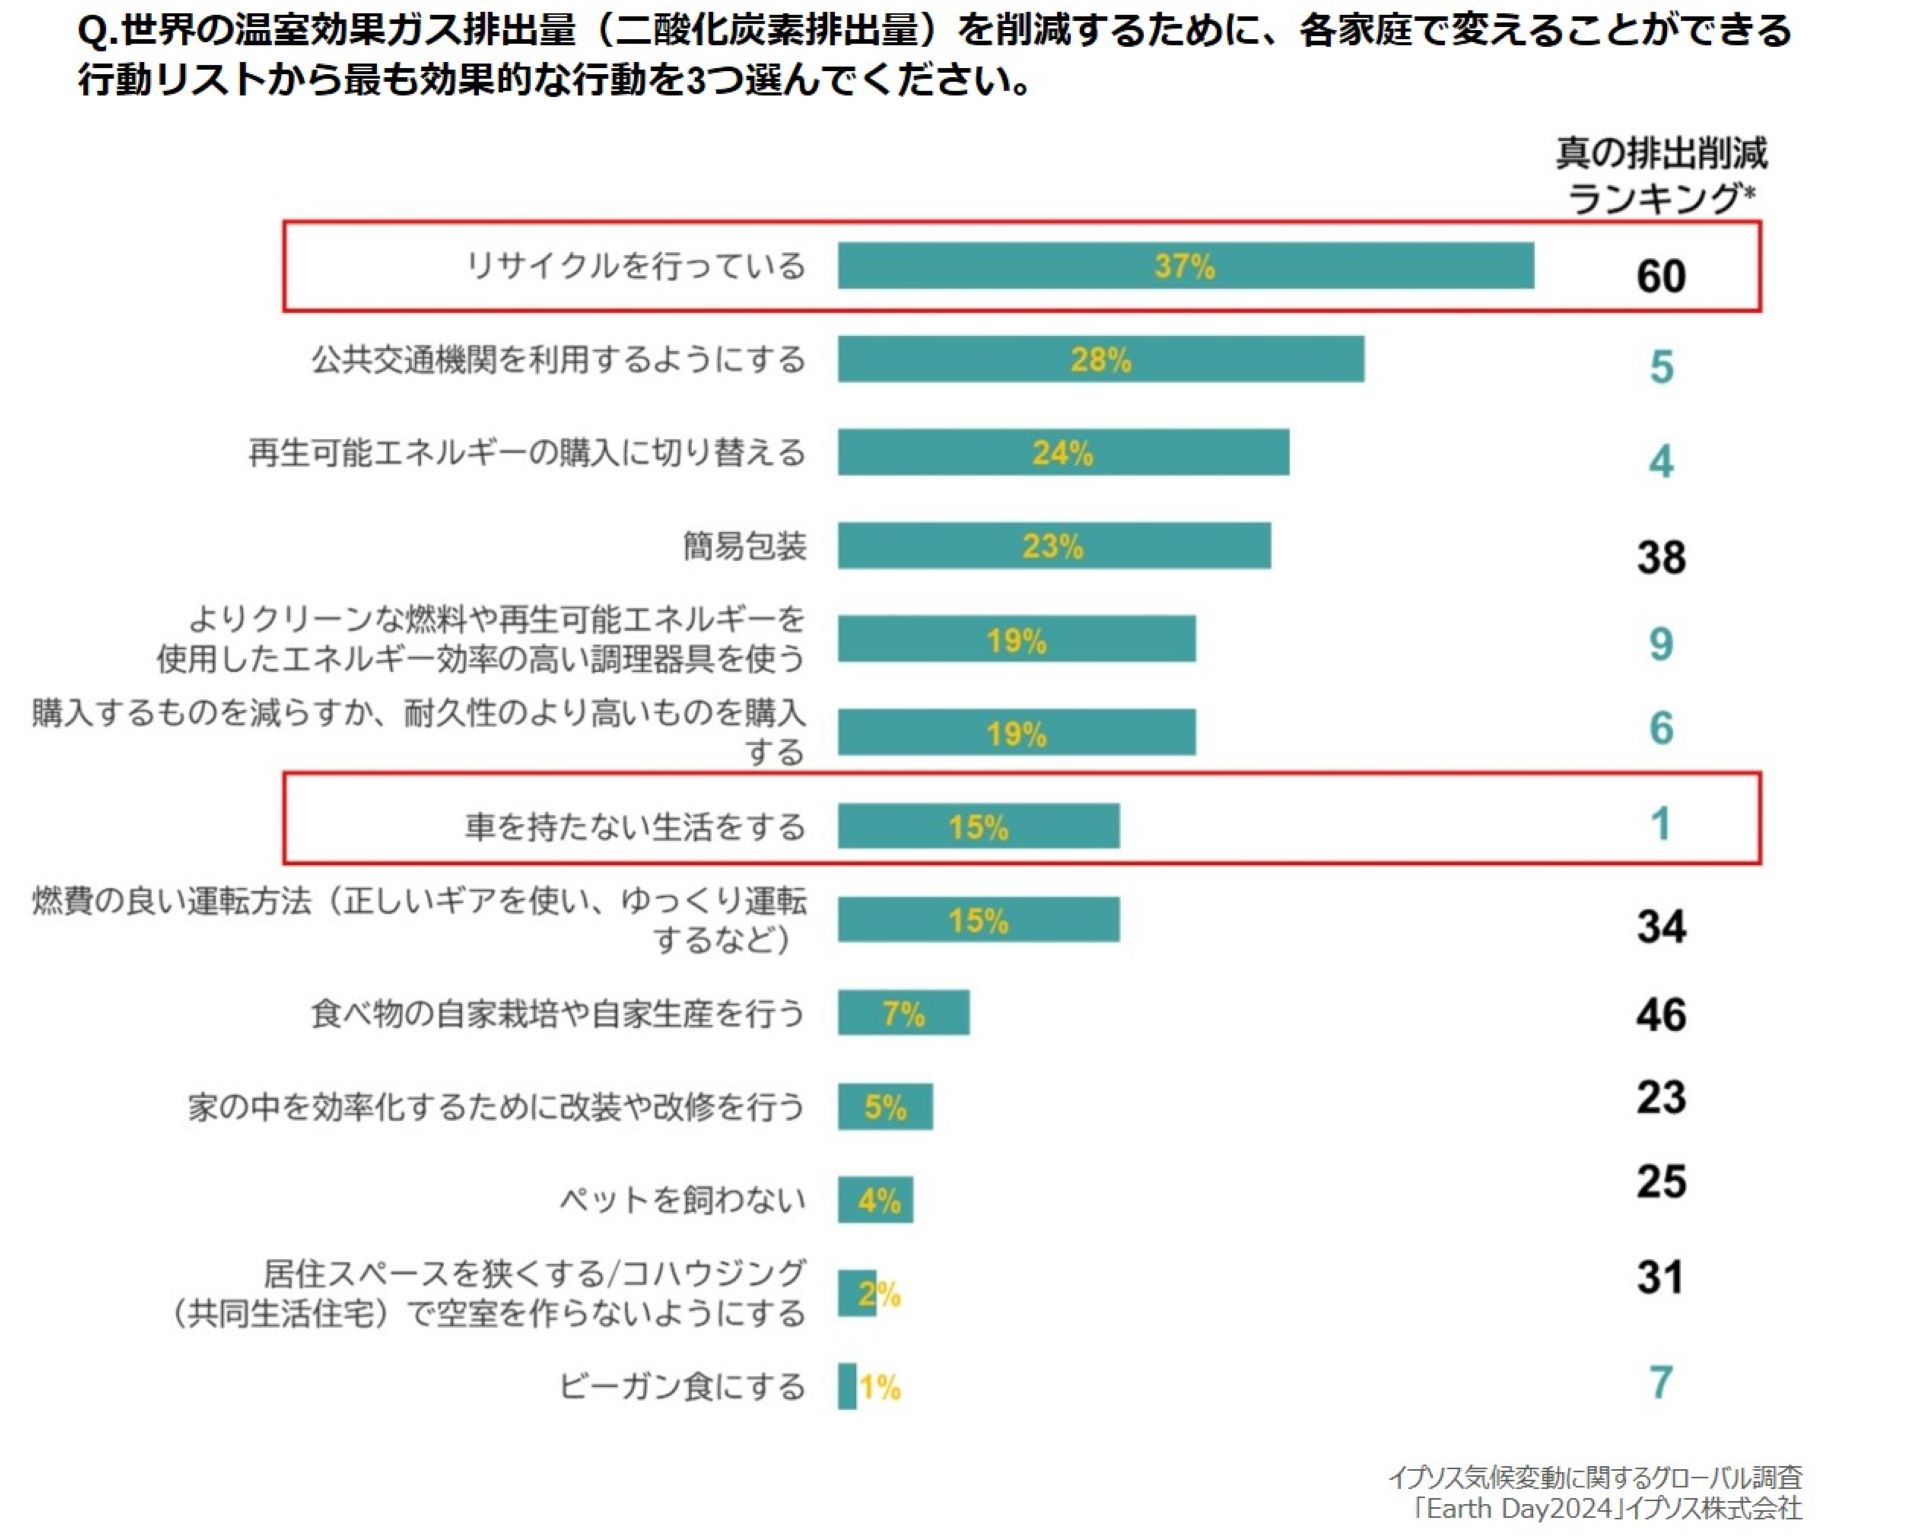 日本人が考える家庭での気候変動対策1位は「リサイクル」、最も効果的 